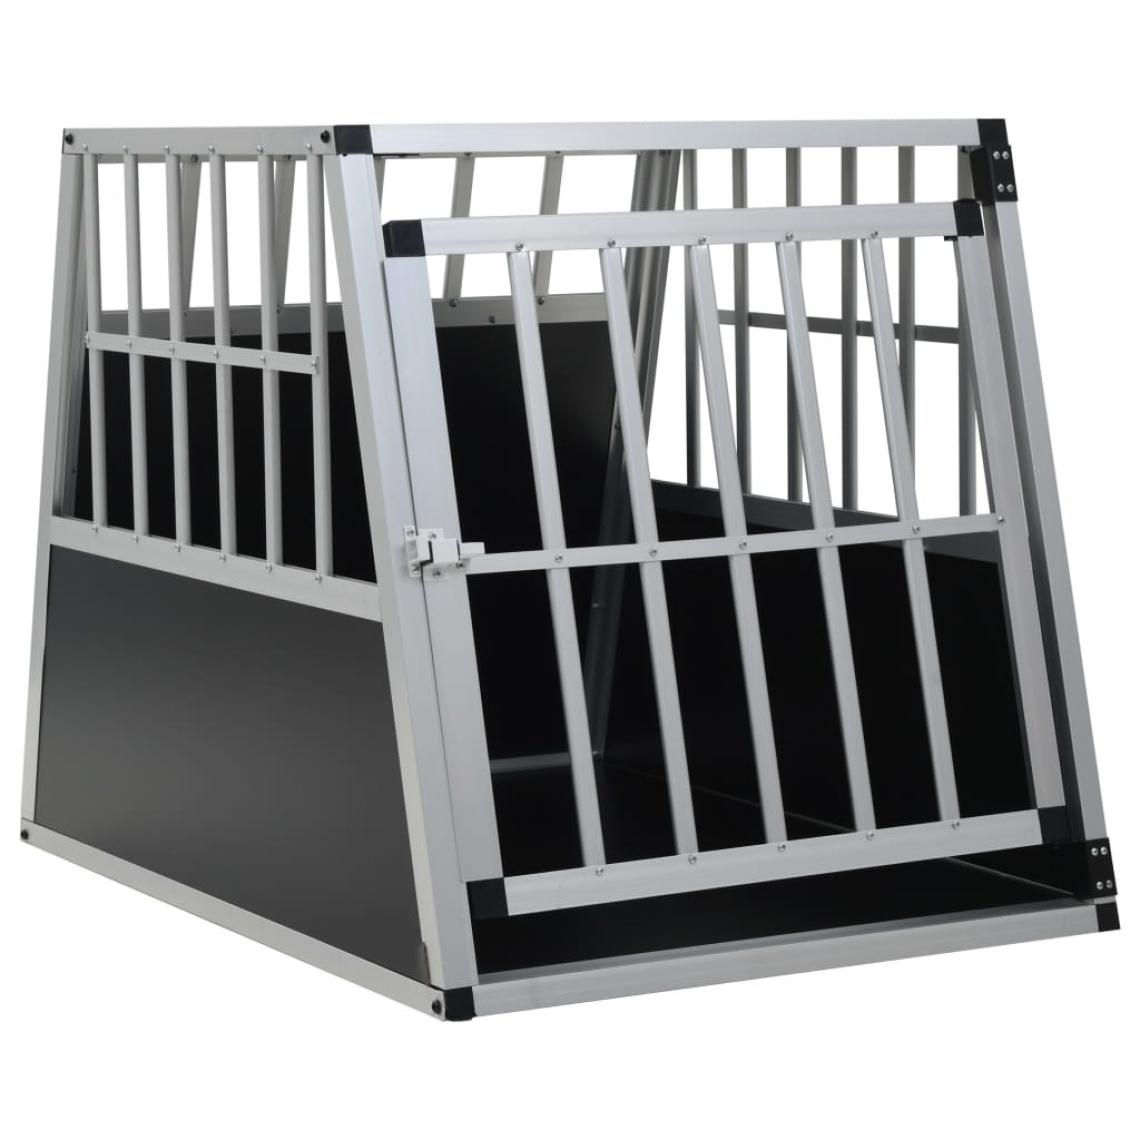 Helloshop26 - Cage pour chien avec une porte 65 x 91 x 69,5 cm noir 02_0000062 - Equipement de transport pour chat